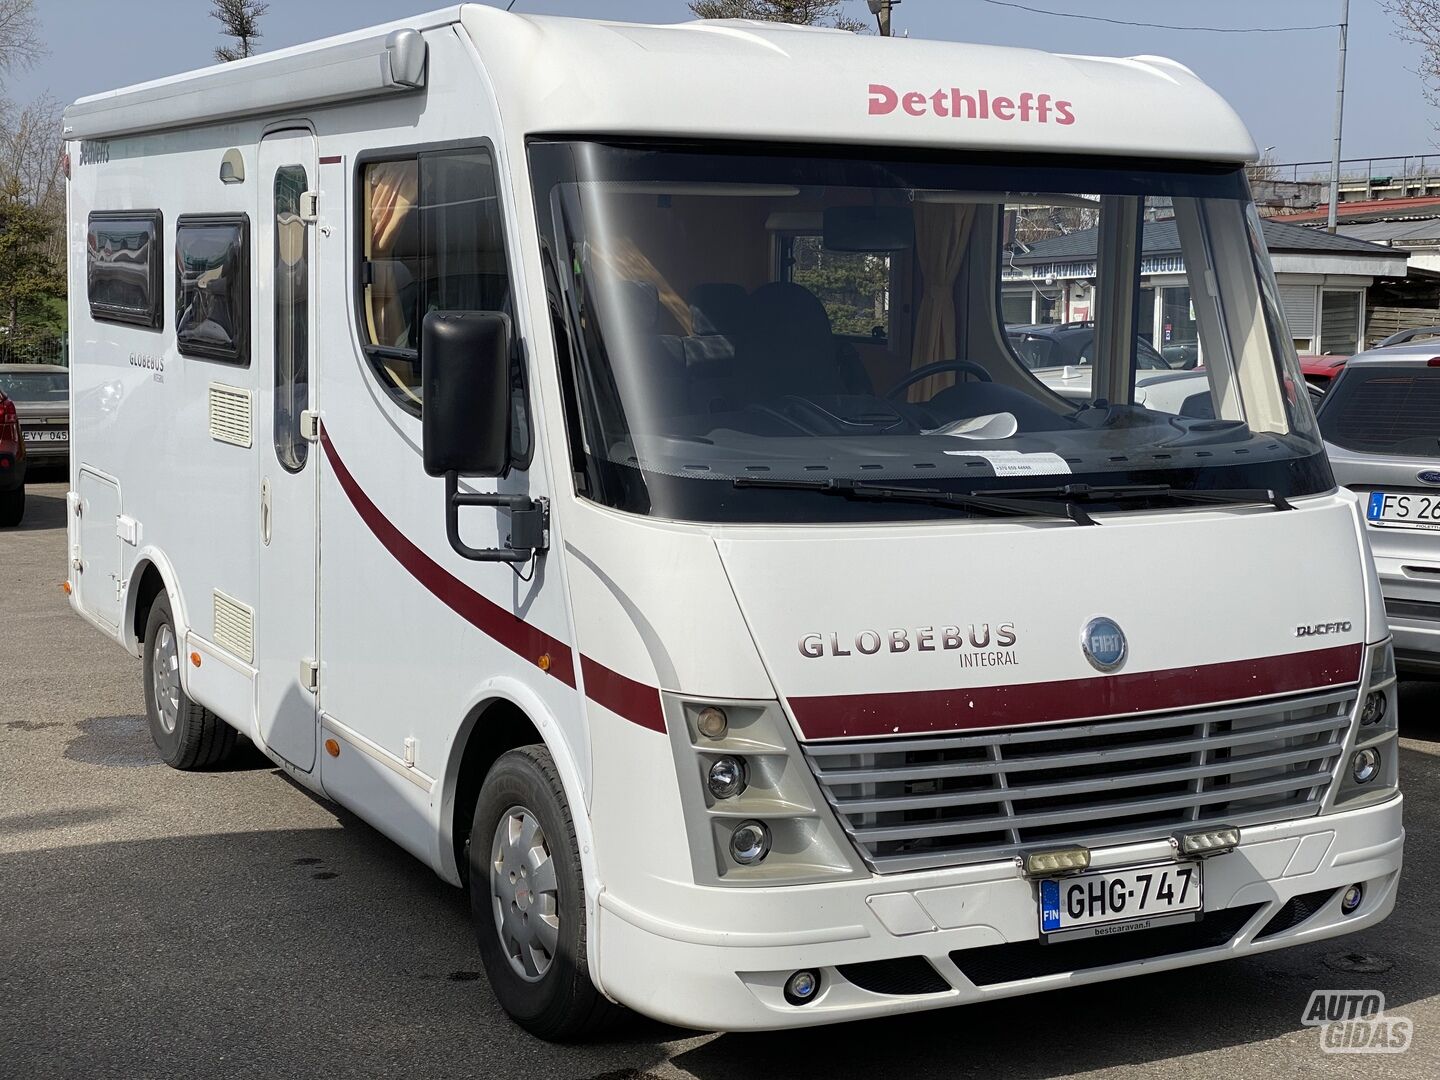 Dethleffs Globebus integral 2007 y Touring car